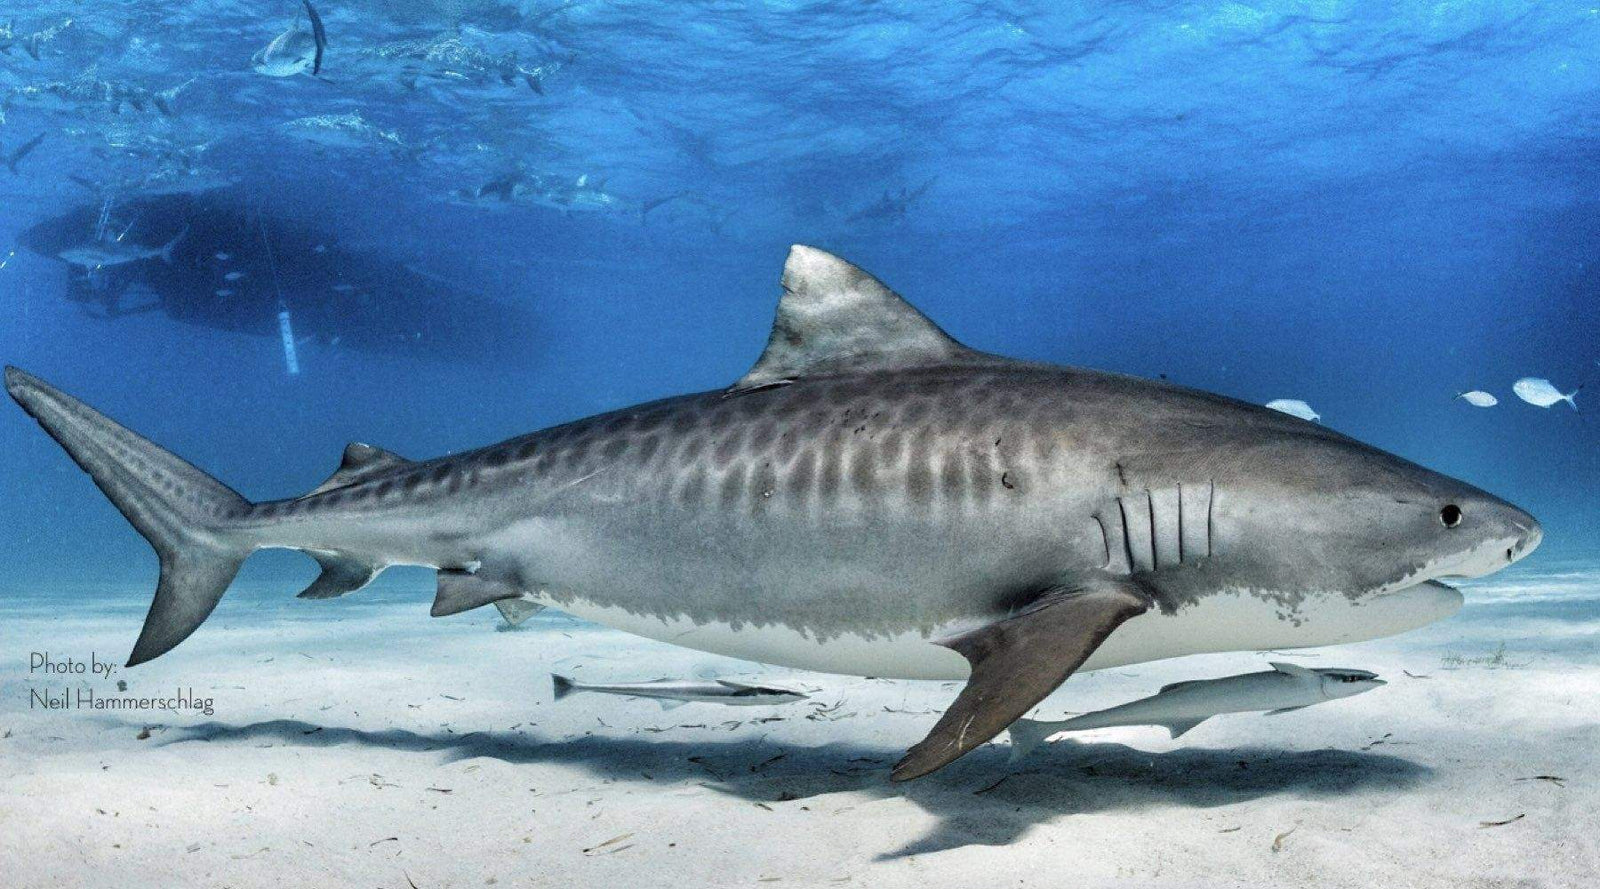 tiger shark images